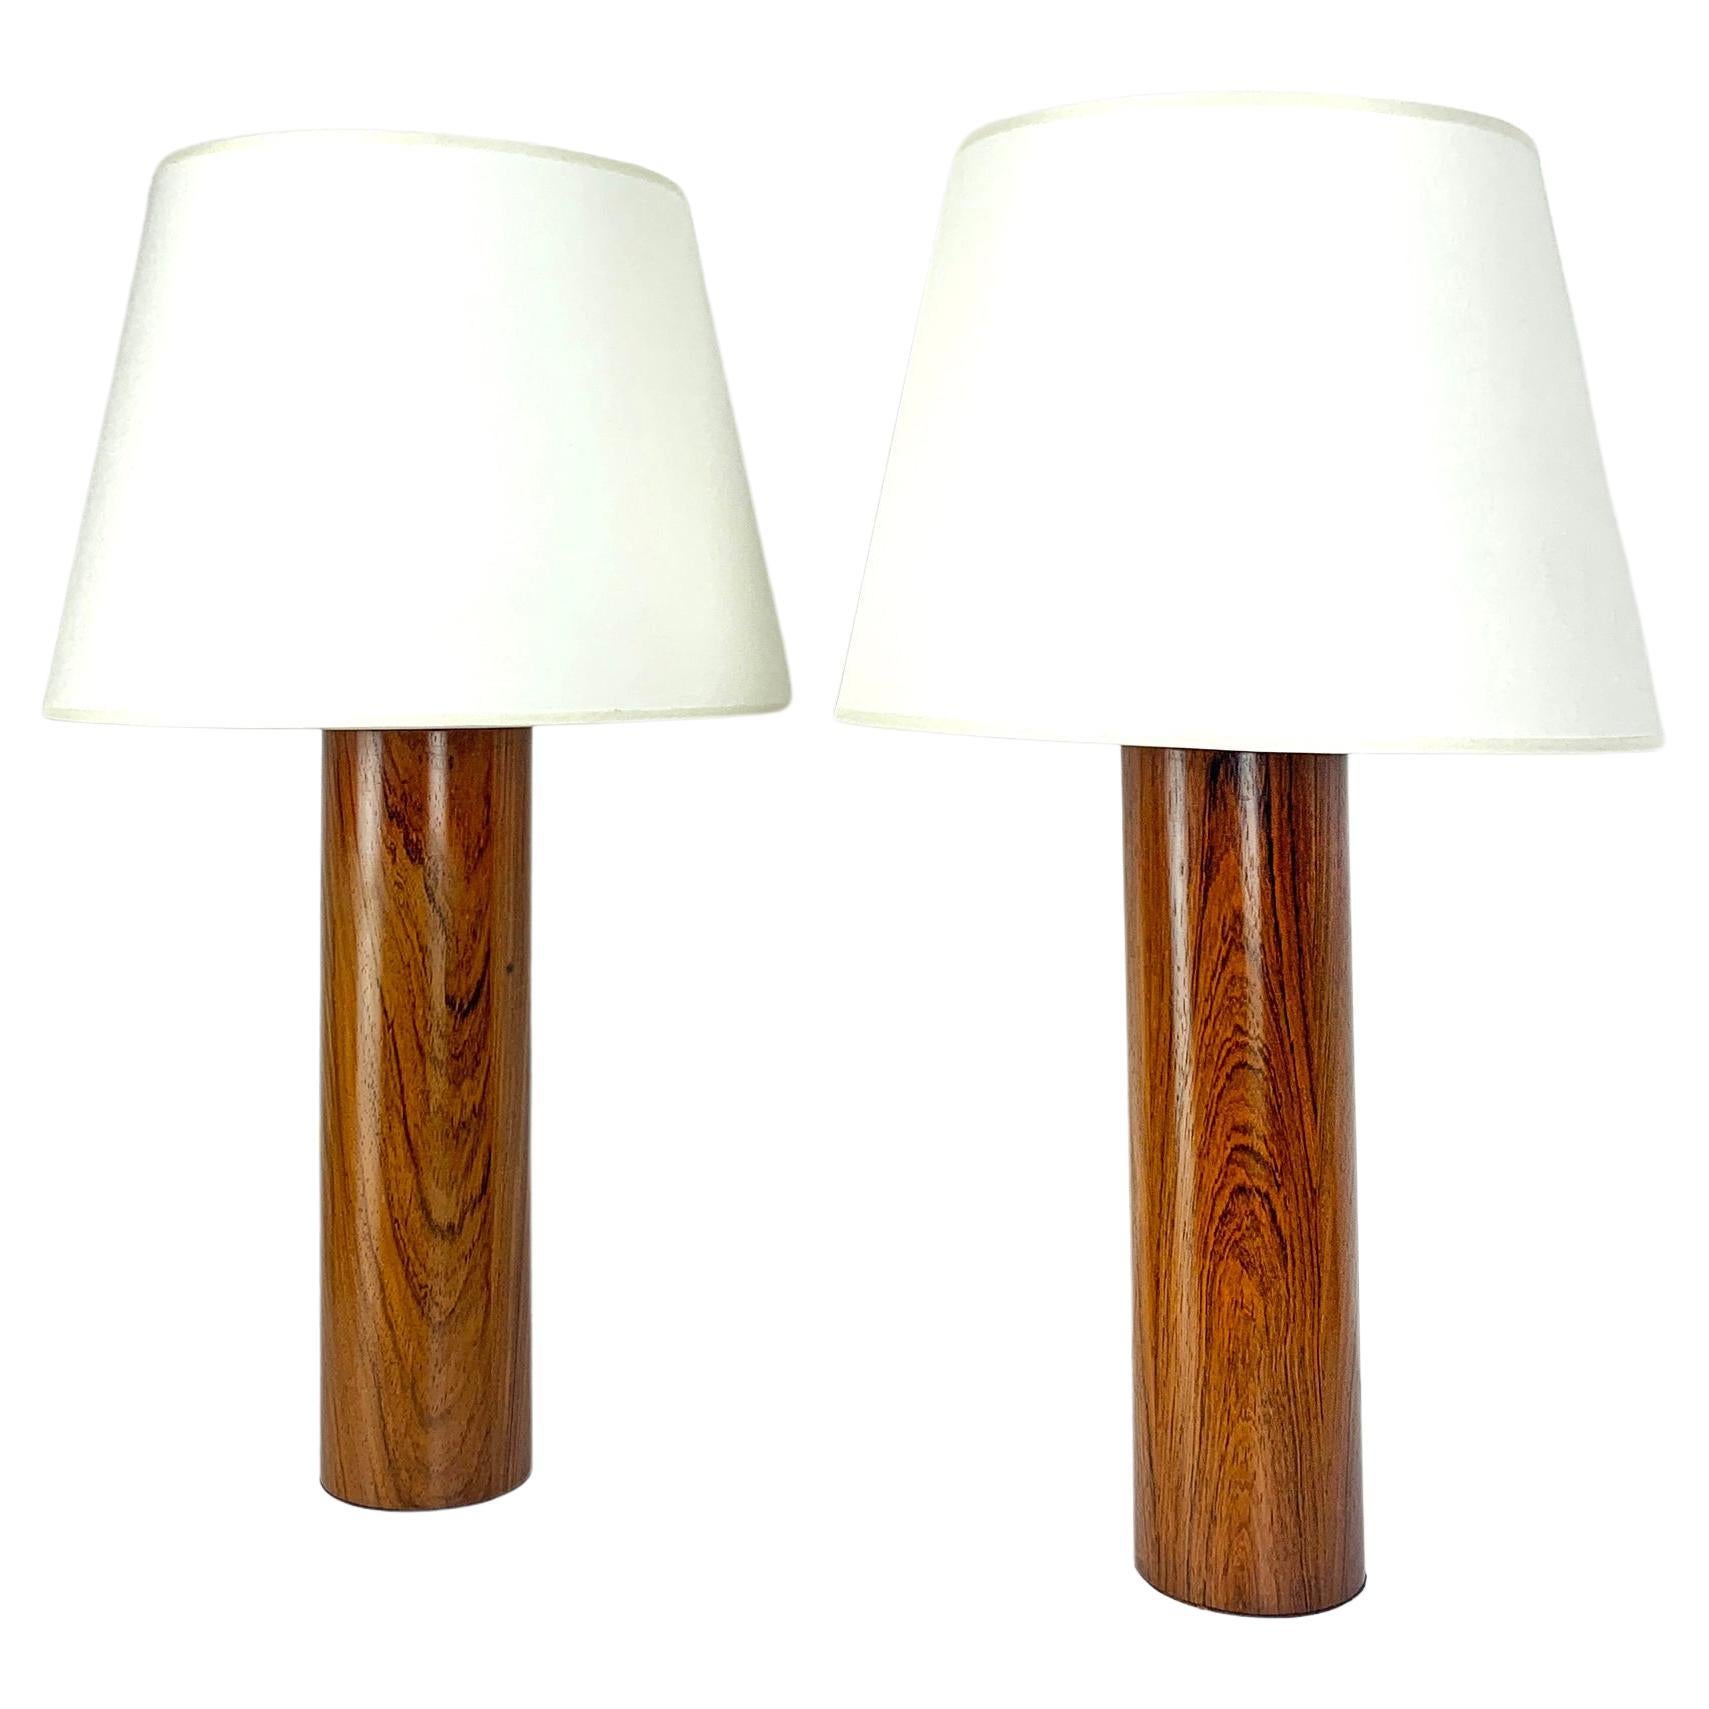 Ein Paar architektonischer Tischlampen. Lampenfüße aus Holz, wahrscheinlich Teakholz. 

Entworfen von Uno Kristiansson, für Luxus, Schweden, 1970er Jahre. Beide haben ihre ursprünglichen Labels behalten: made in Sweden - Luxus Vittsjö - Design Uno &